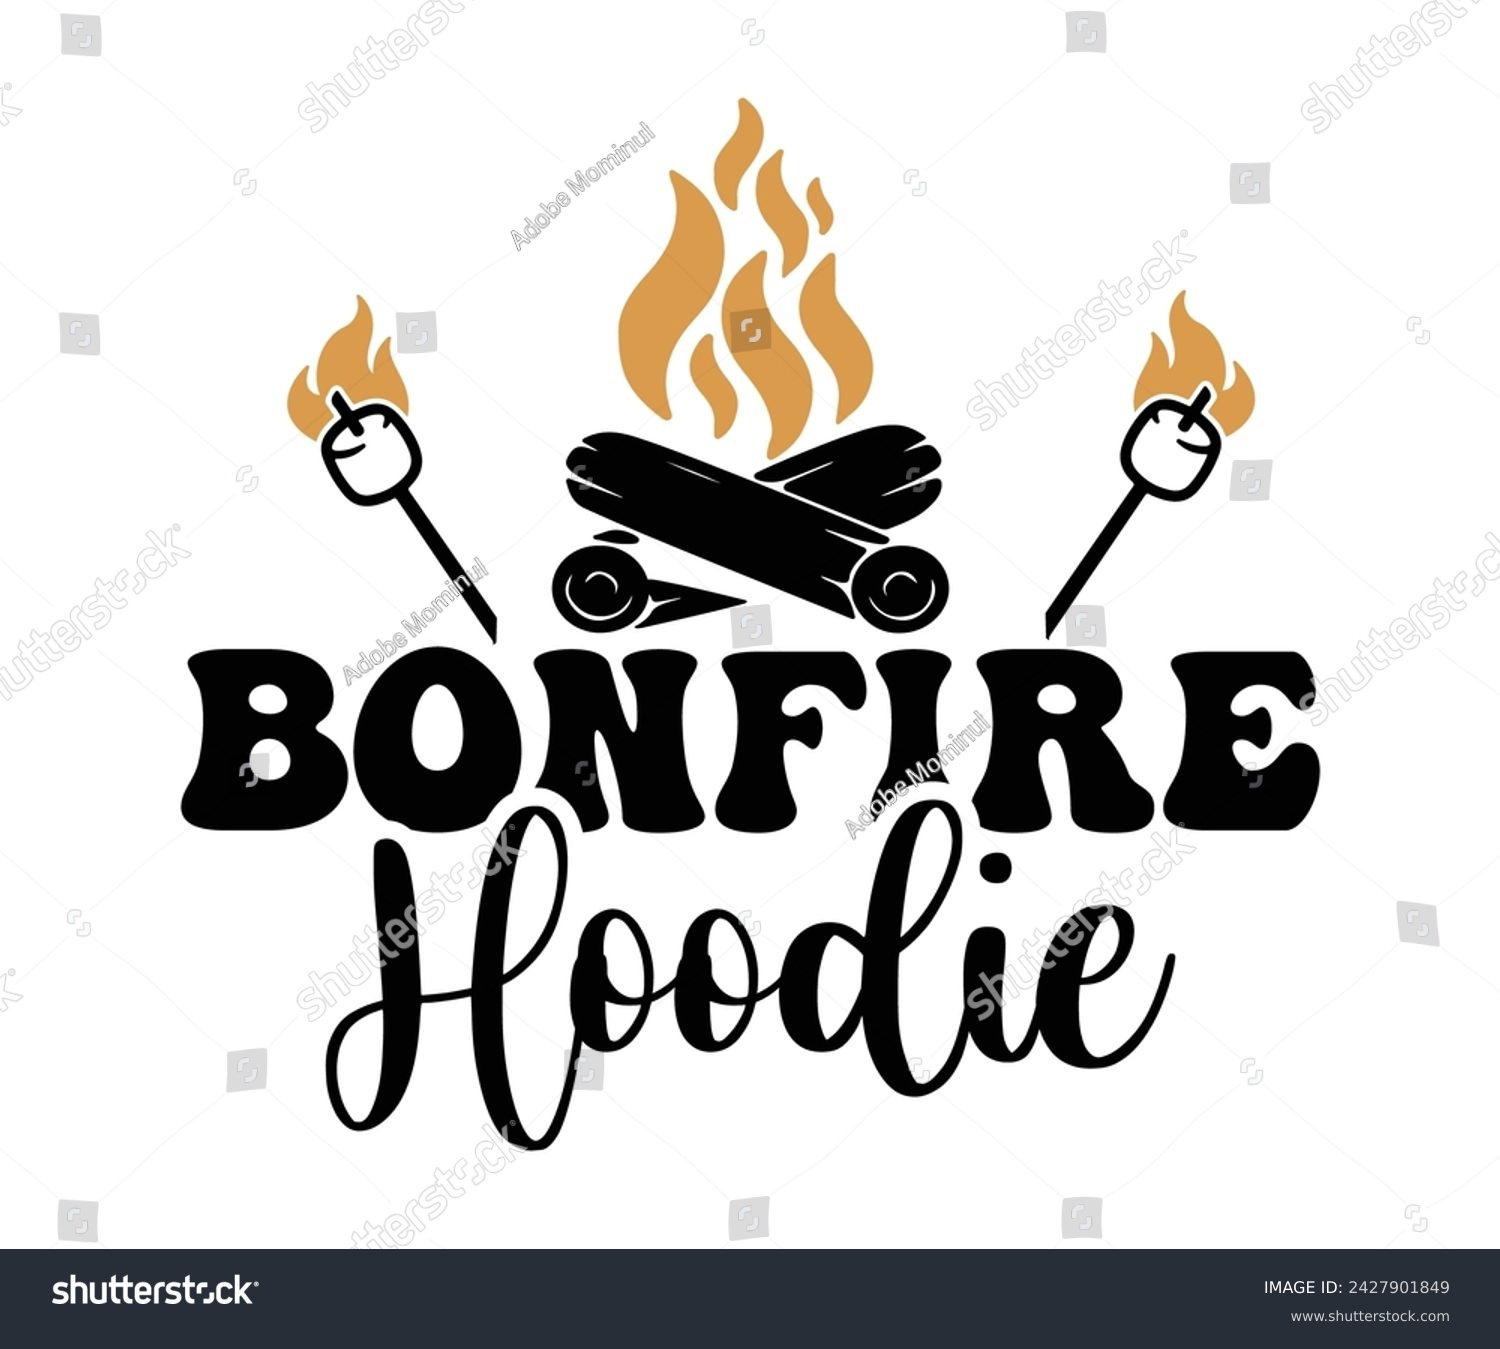 SVG of Bonfire hoodie Svg,Happy Camper Svg,Camping Svg,Adventure Svg,Hiking Svg,Camp Saying,Camp Life Svg,Svg Cut Files, Png,Mountain T-shirt,Instant Download svg